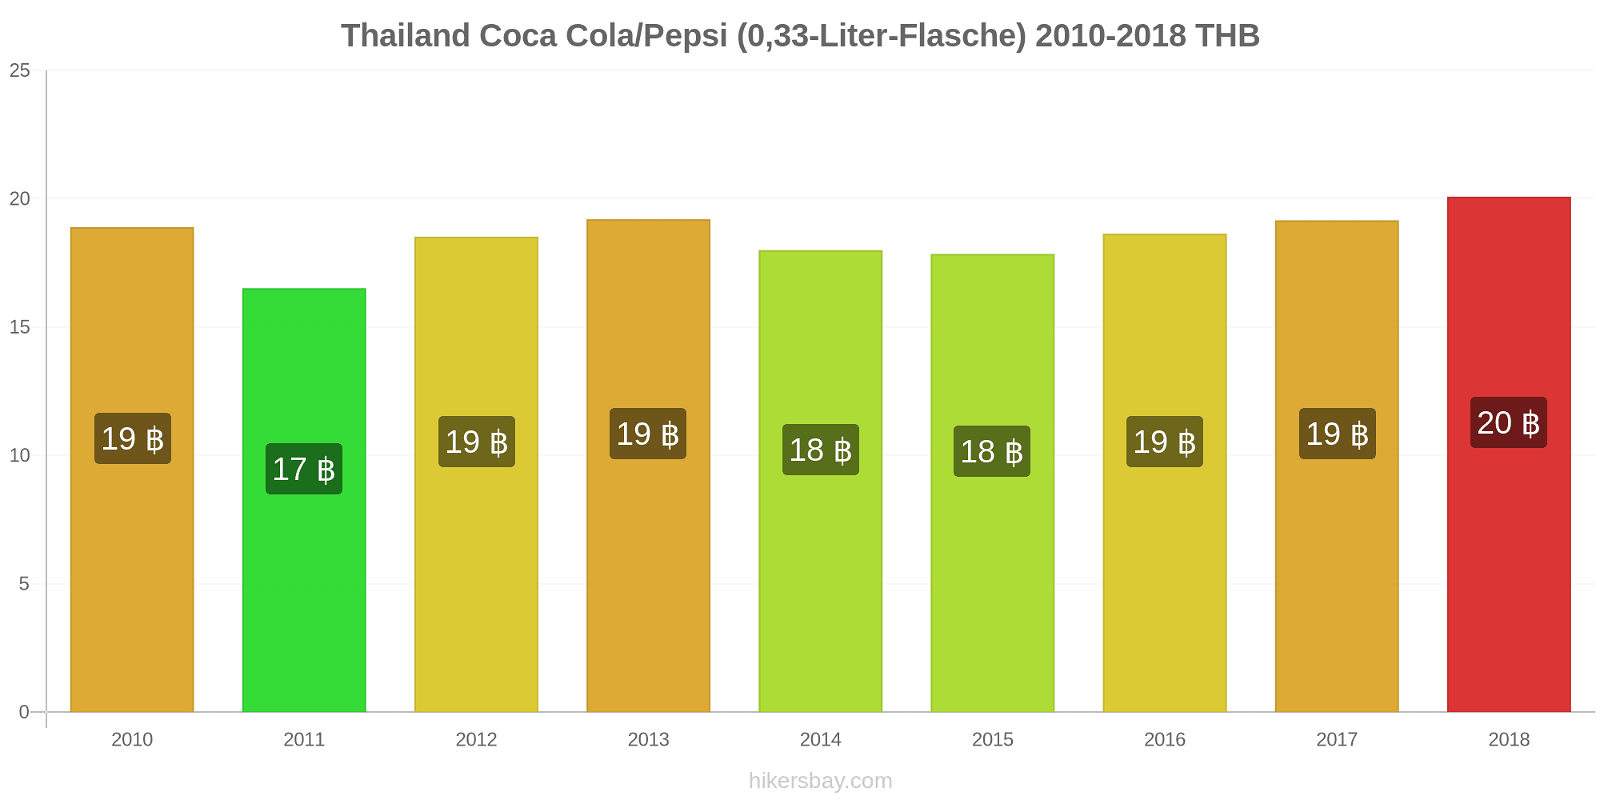 Thailand Preisänderungen Coke/Pepsi (0,33-Liter-Flasche) hikersbay.com